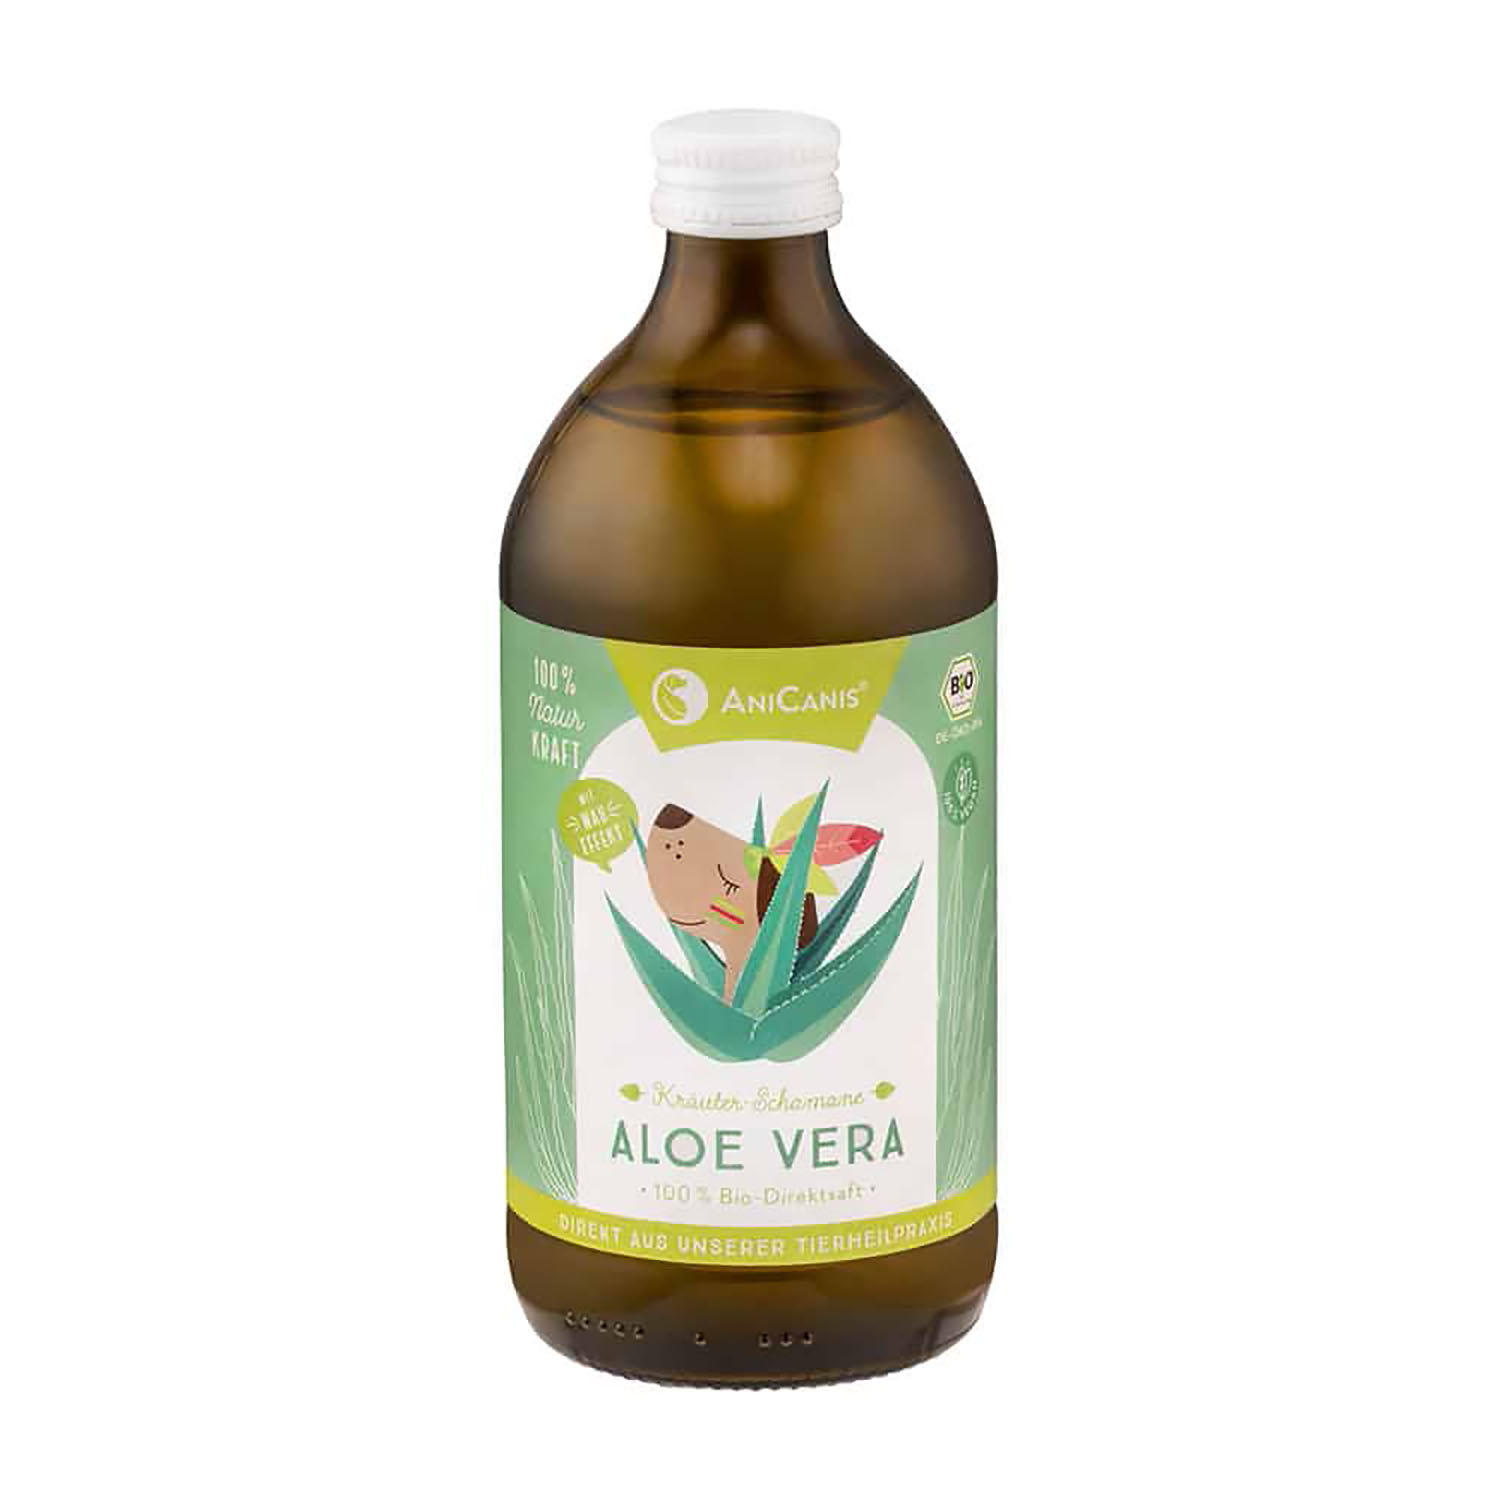 Aloe Vera Bio-Direktsaft von AniCanis – 500ml